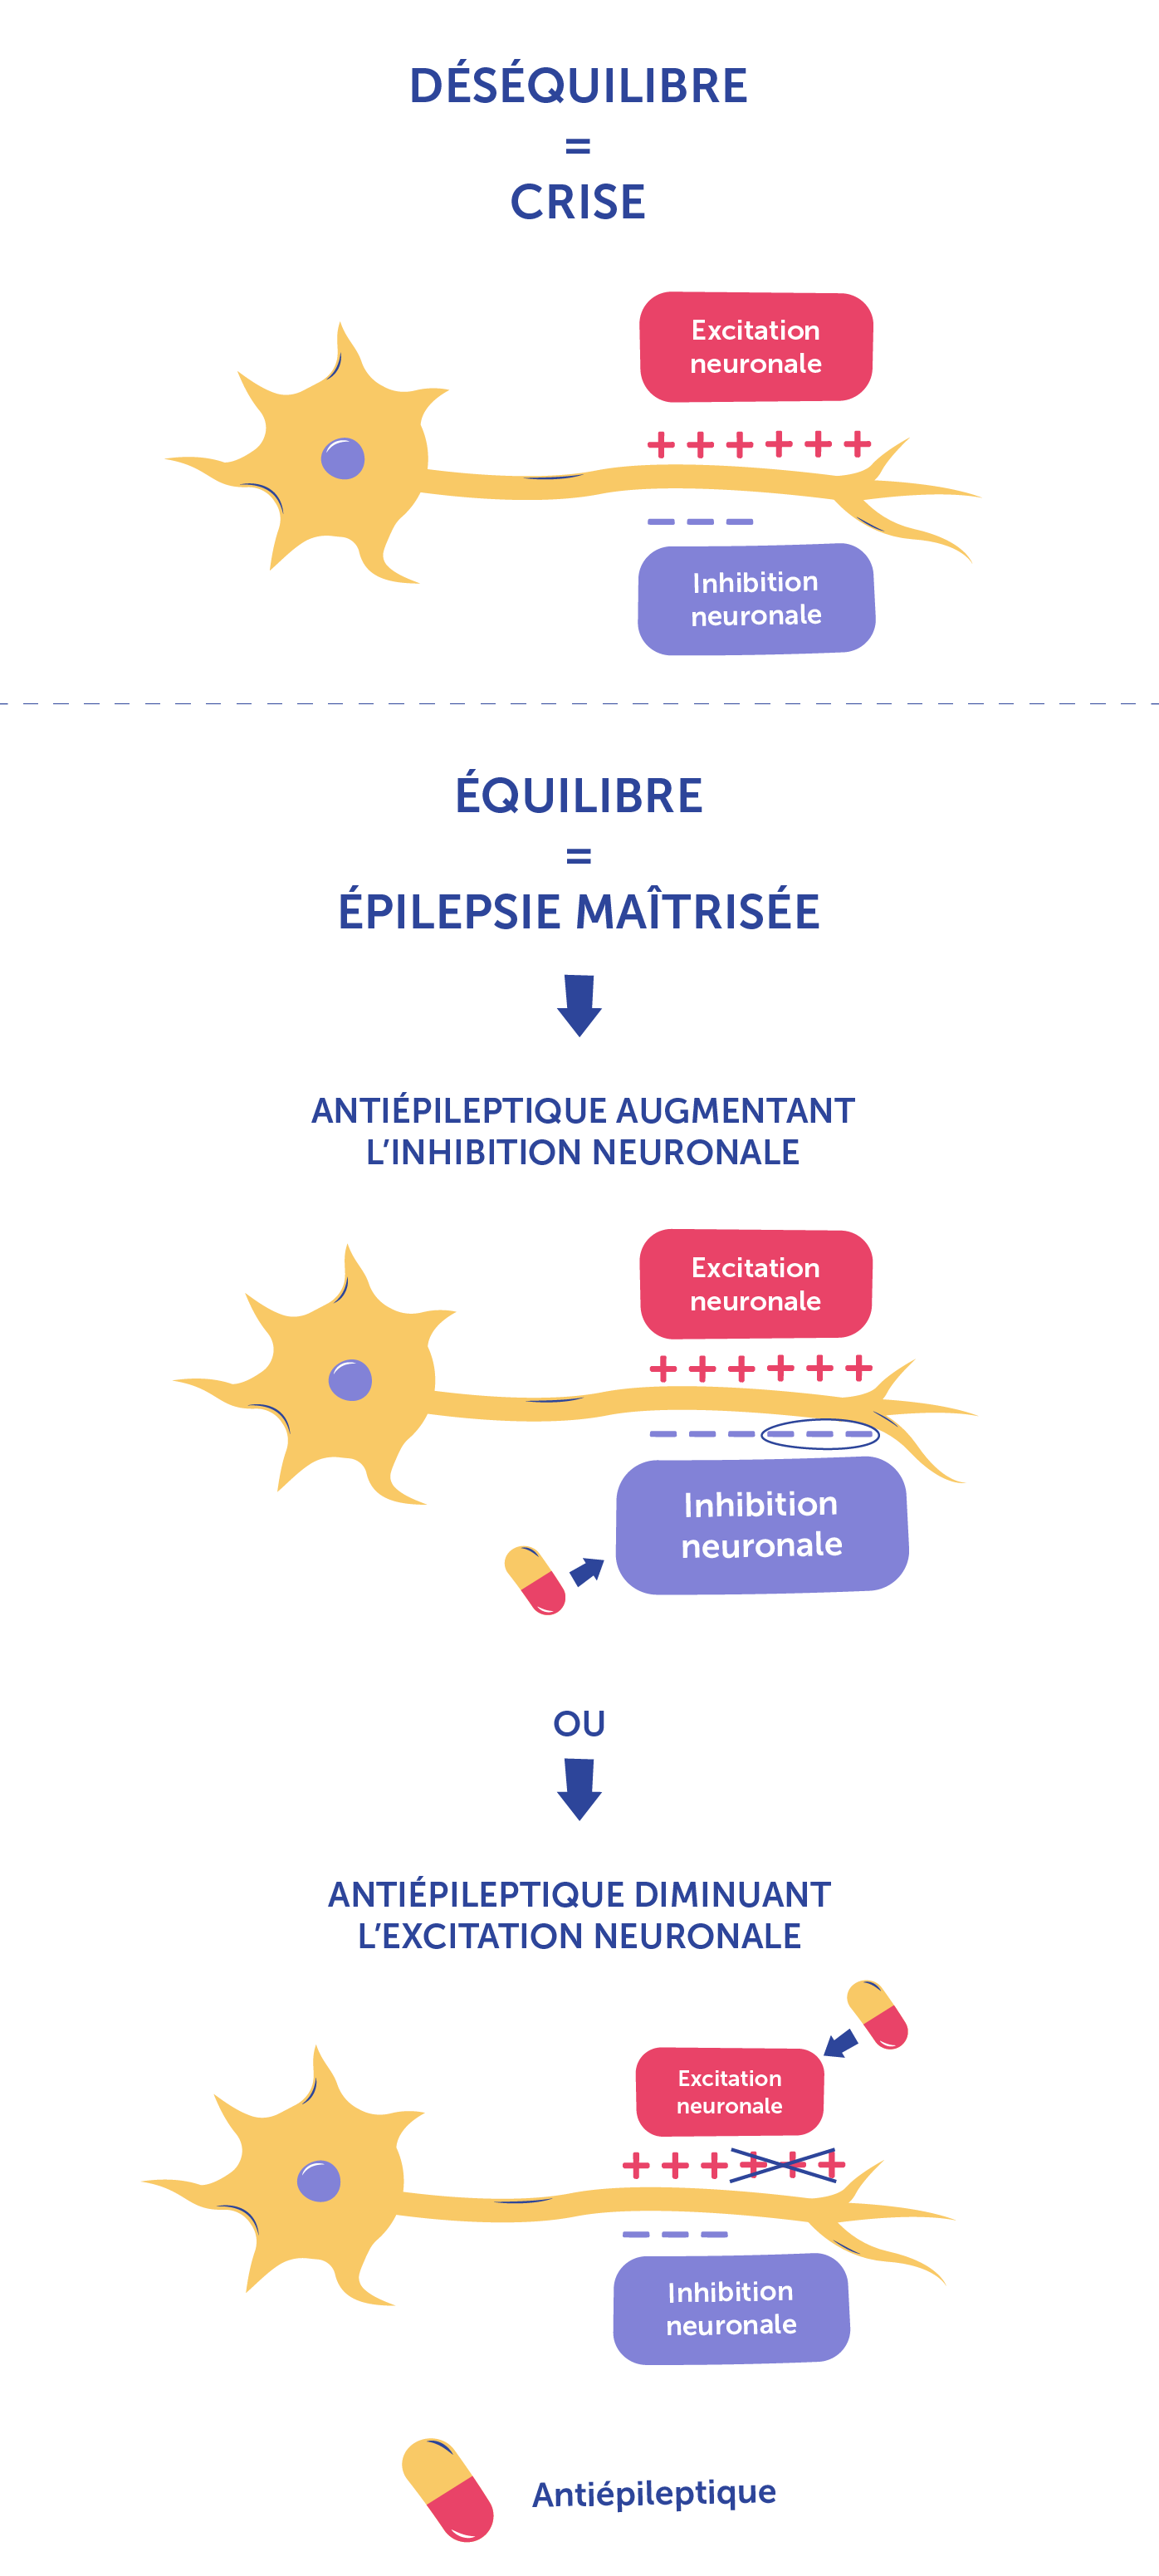 schéma mécanisme d'action d'un antiépileptique : inhibition neuronale / excitation neuronale